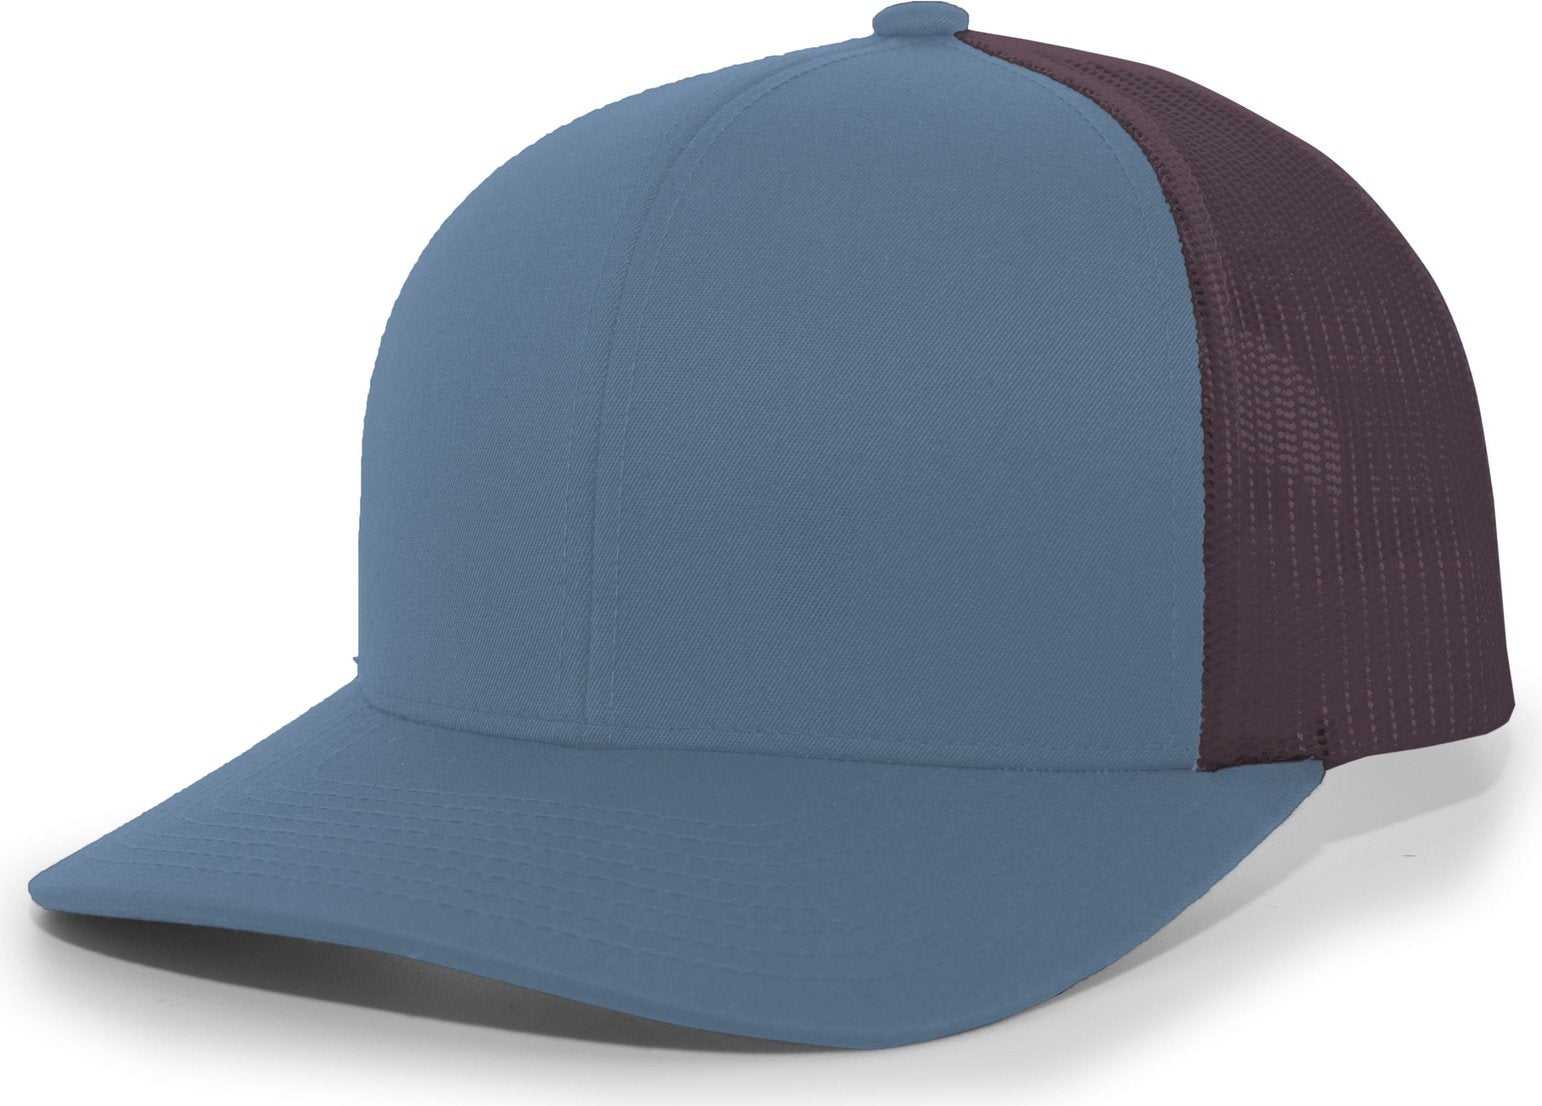 Pacific Headwear 104C Trucker Snapback Cap - Ocean Blue Charcoal - HIT a Double